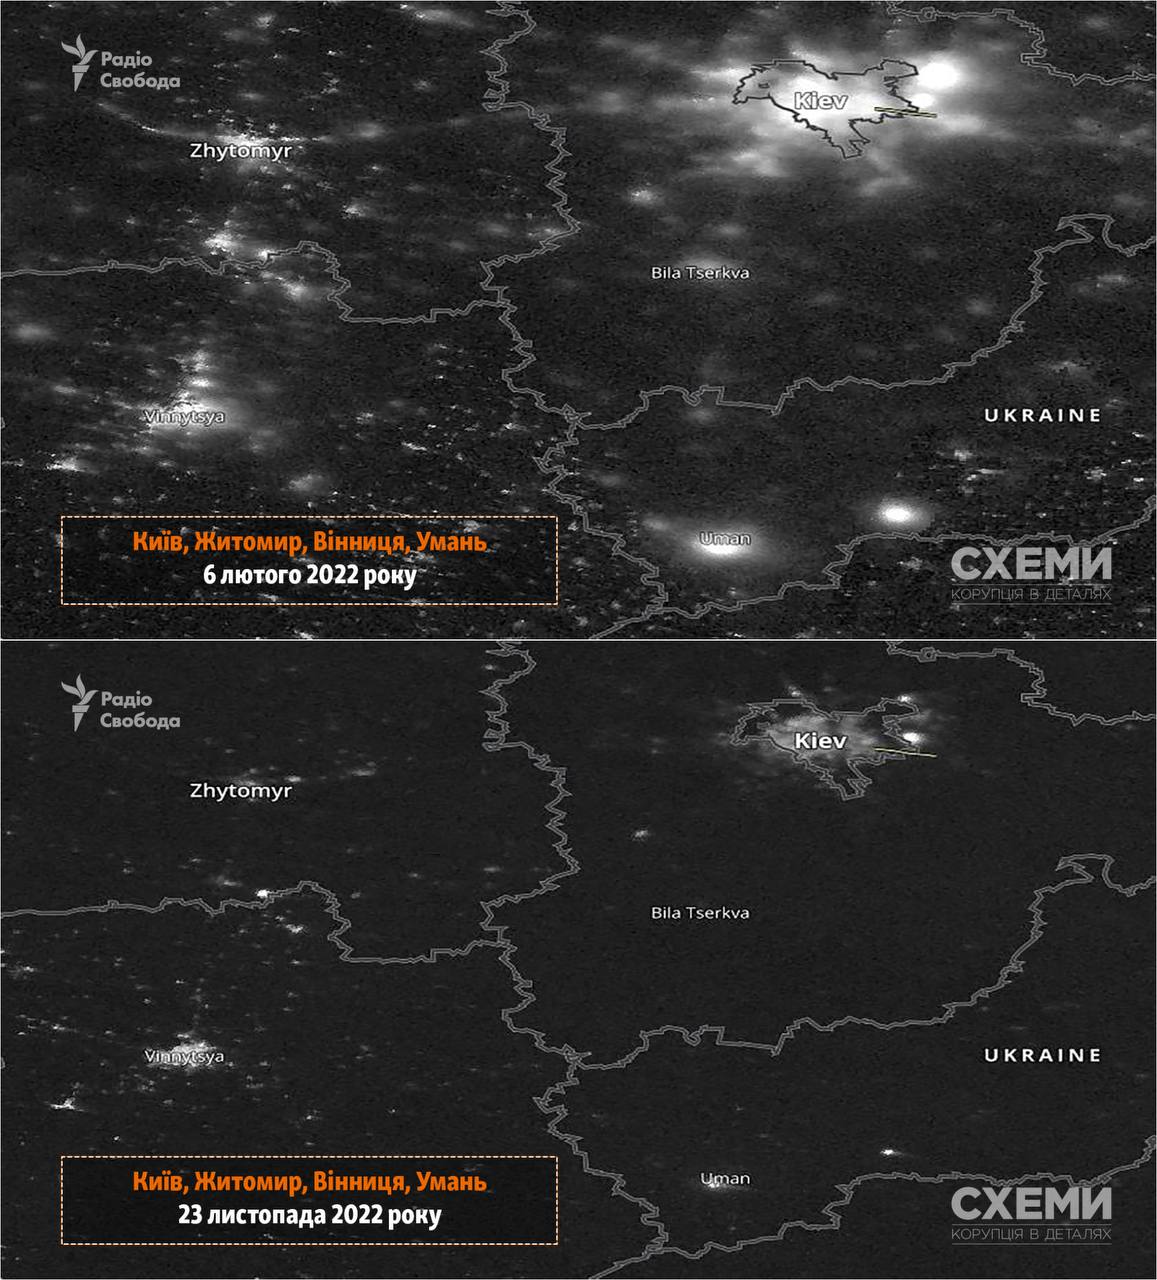 Схемы опубликовали снимки NASA Worldview, показывающие как выглядел вчерашний блекаут из космоса